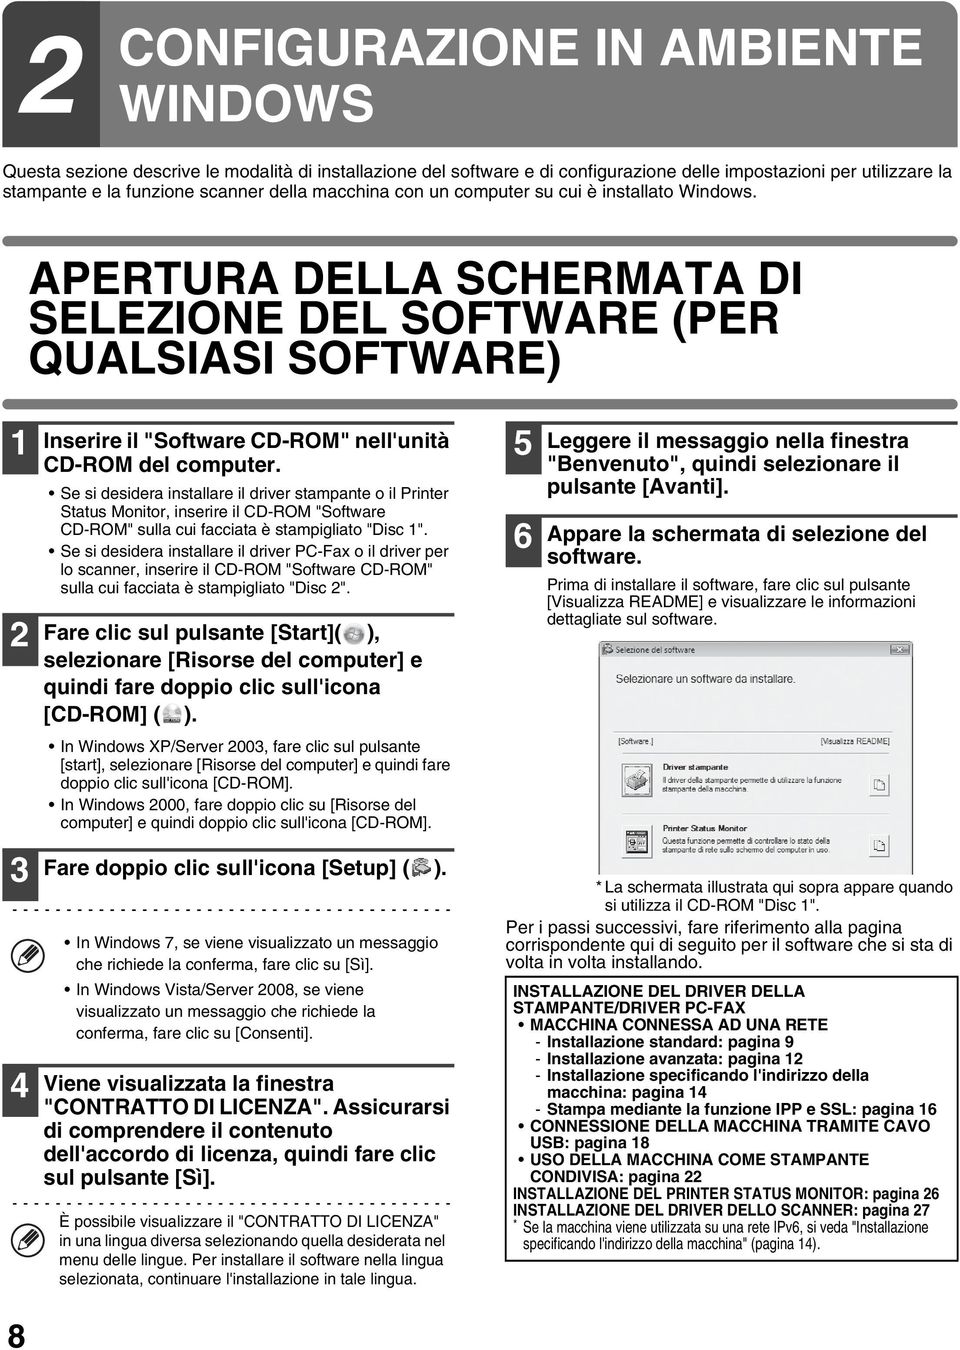 APERTURA DELLA SCHERMATA DI SELEZIONE DEL SOFTWARE (PER QUALSIASI SOFTWARE) 1 2 3 4 8 Inserire il "Software CD-ROM" nell'unità CD-ROM del computer.